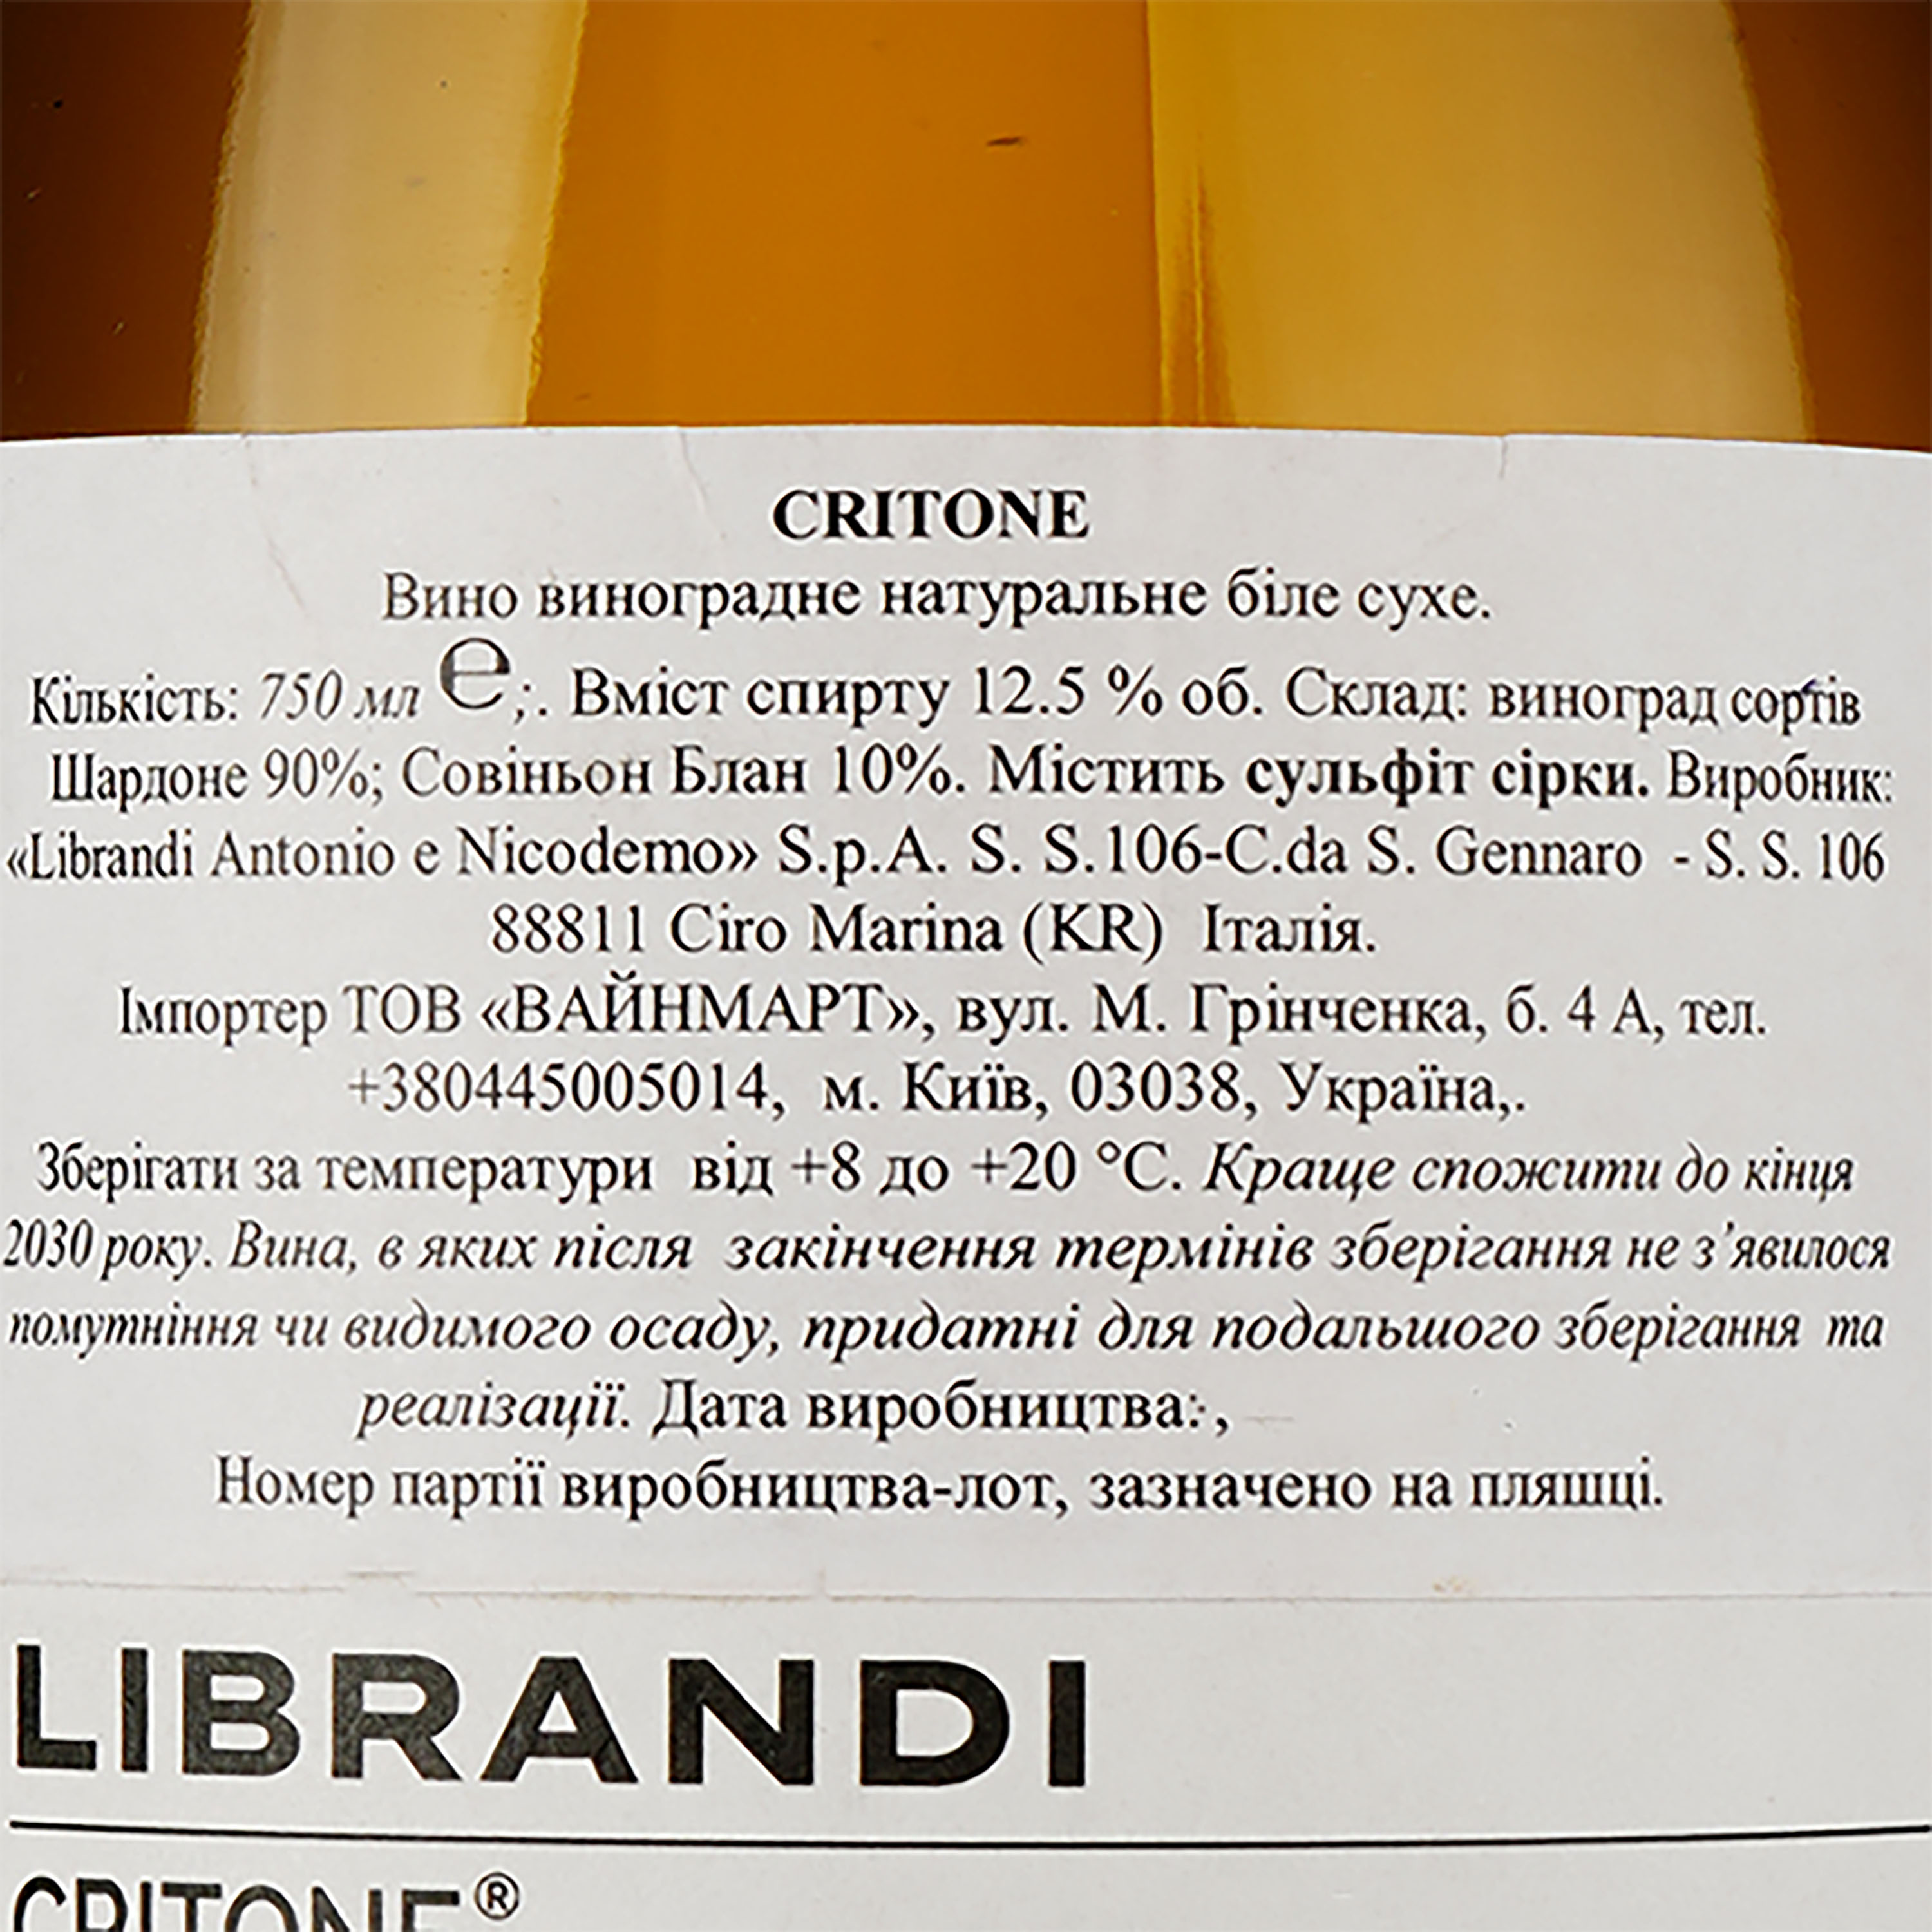 Вино Librandi Critone Bianco, белое, сухое, 0,75 л - фото 3